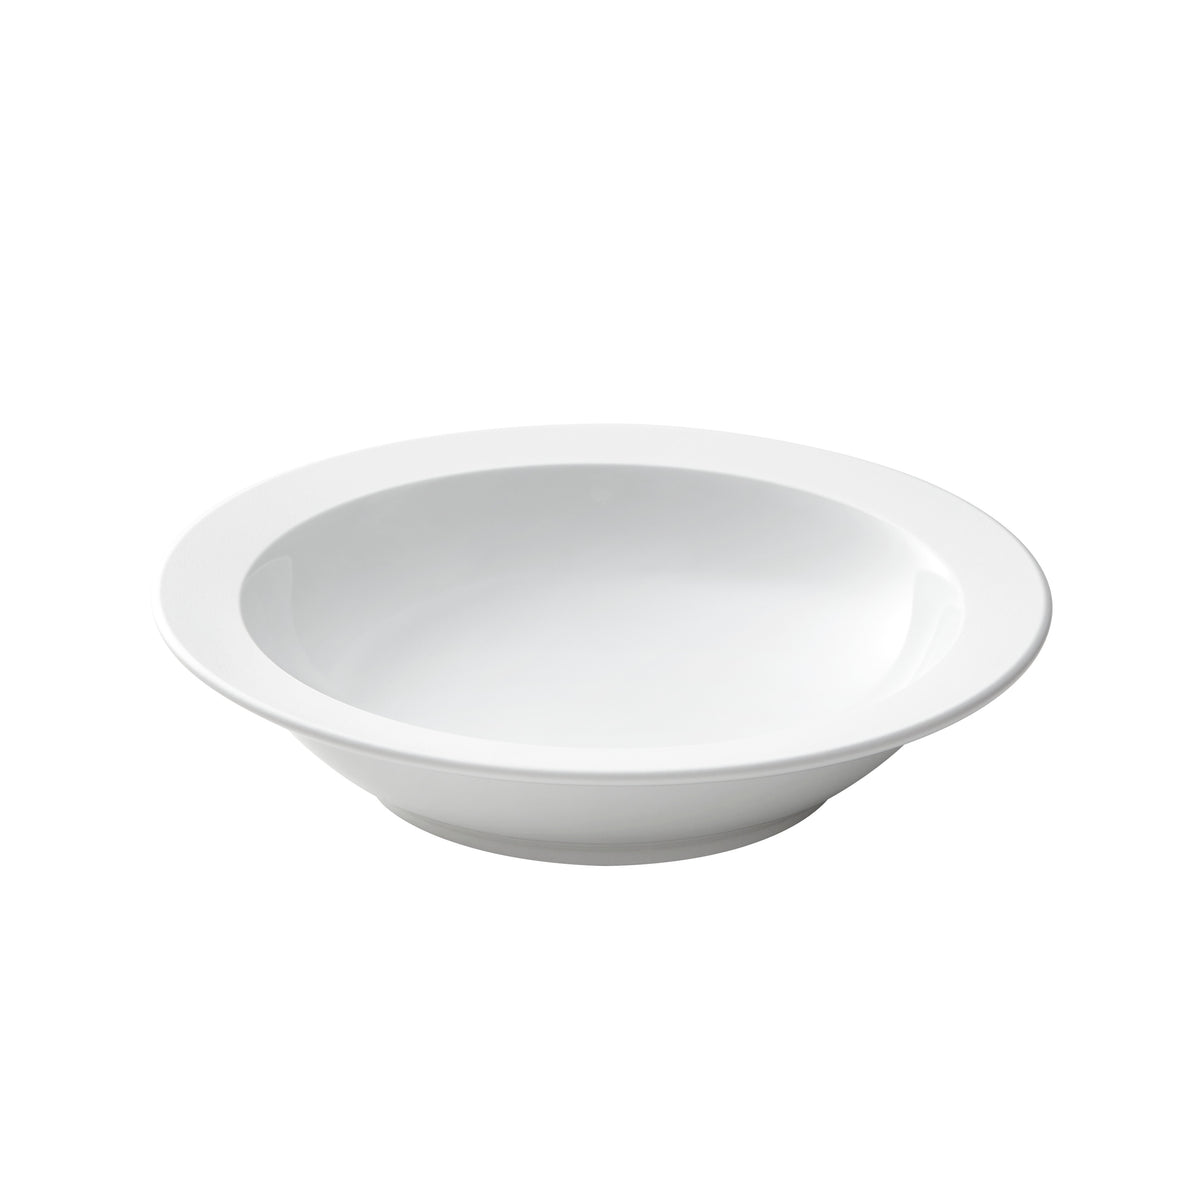 Round Soup / Pasta bowl w/ narrow rim 7" 7/8 - White 7" 7/8